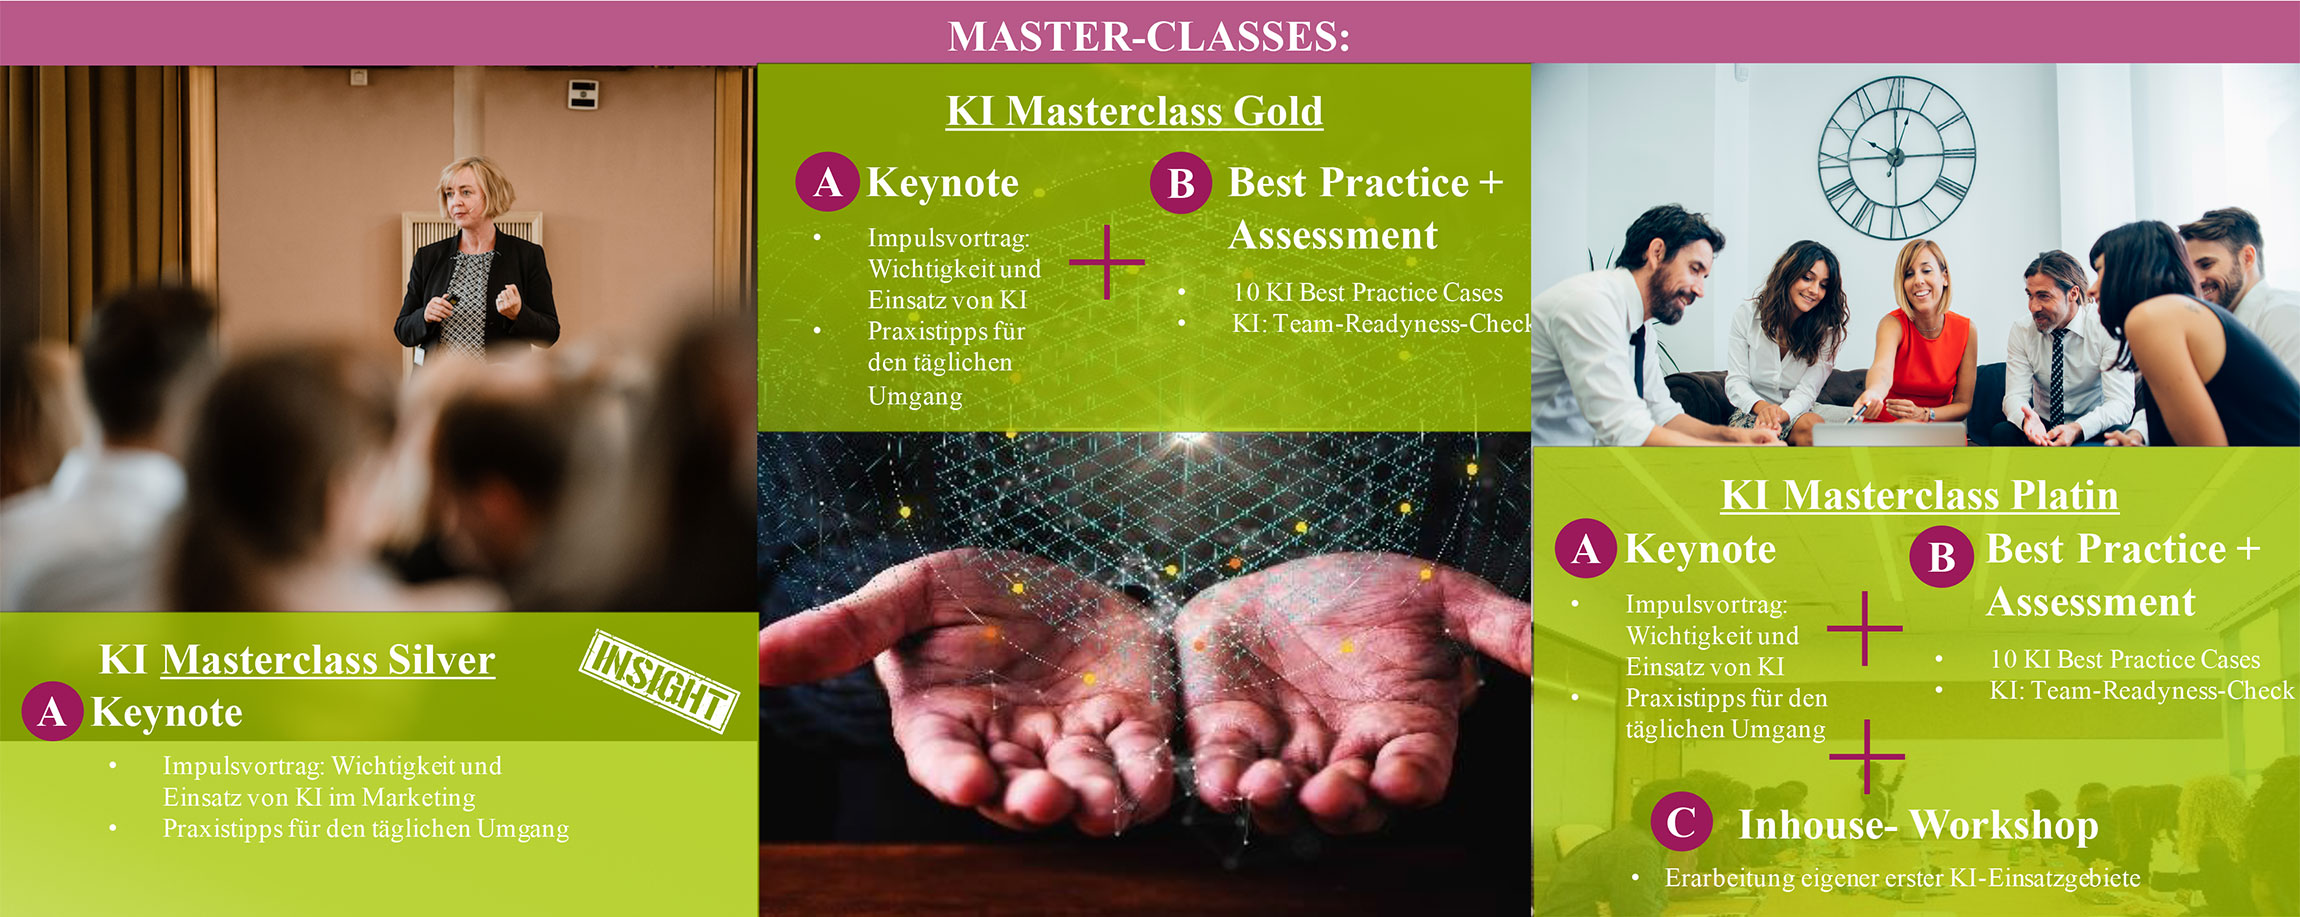 master-classes